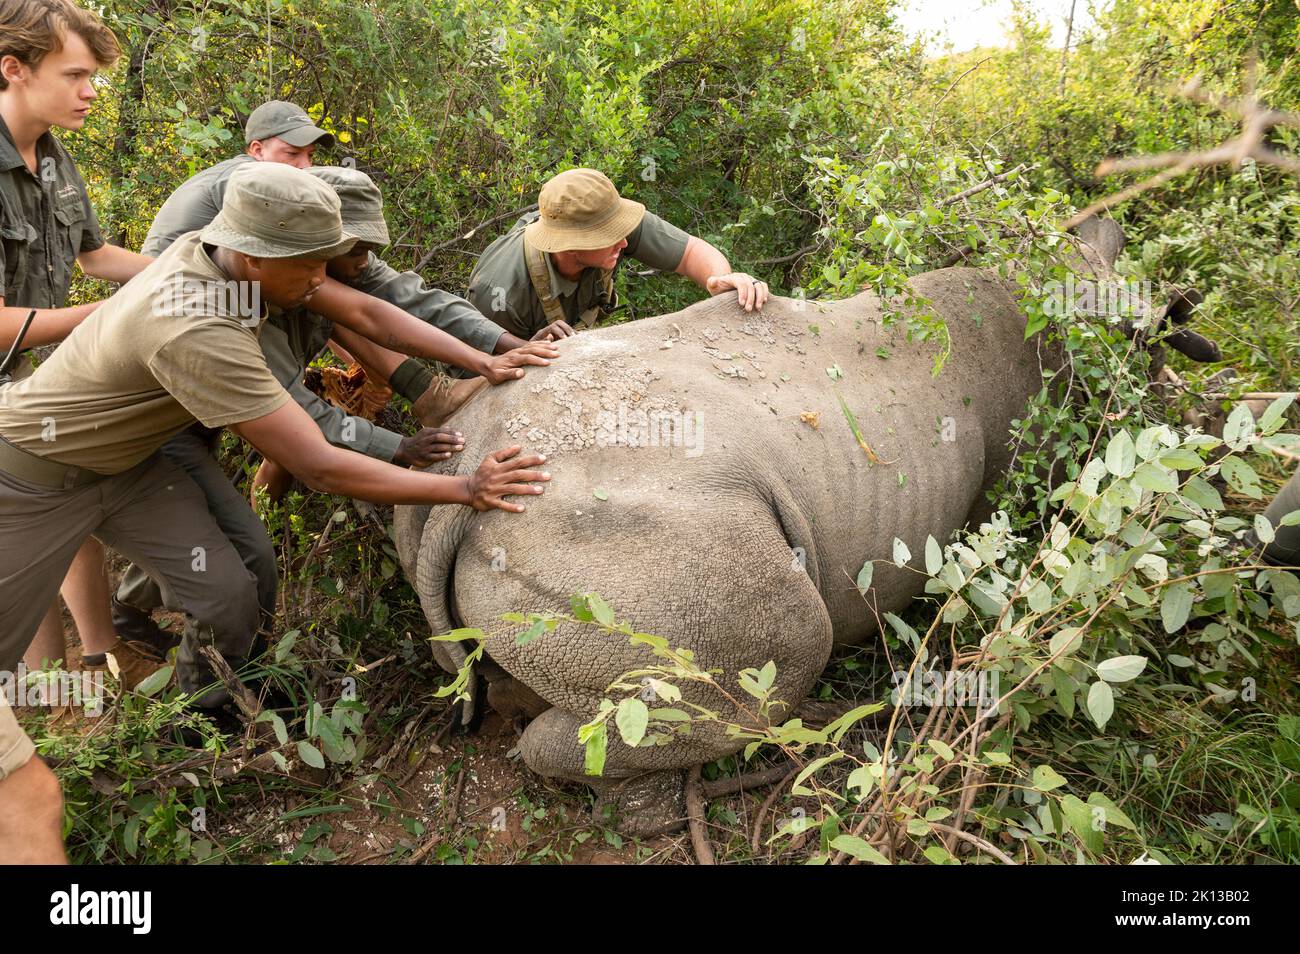 Opération de collages de Rhino au camp de conservation de Marataba, parc national de Marakele, Afrique du Sud, Afrique Banque D'Images